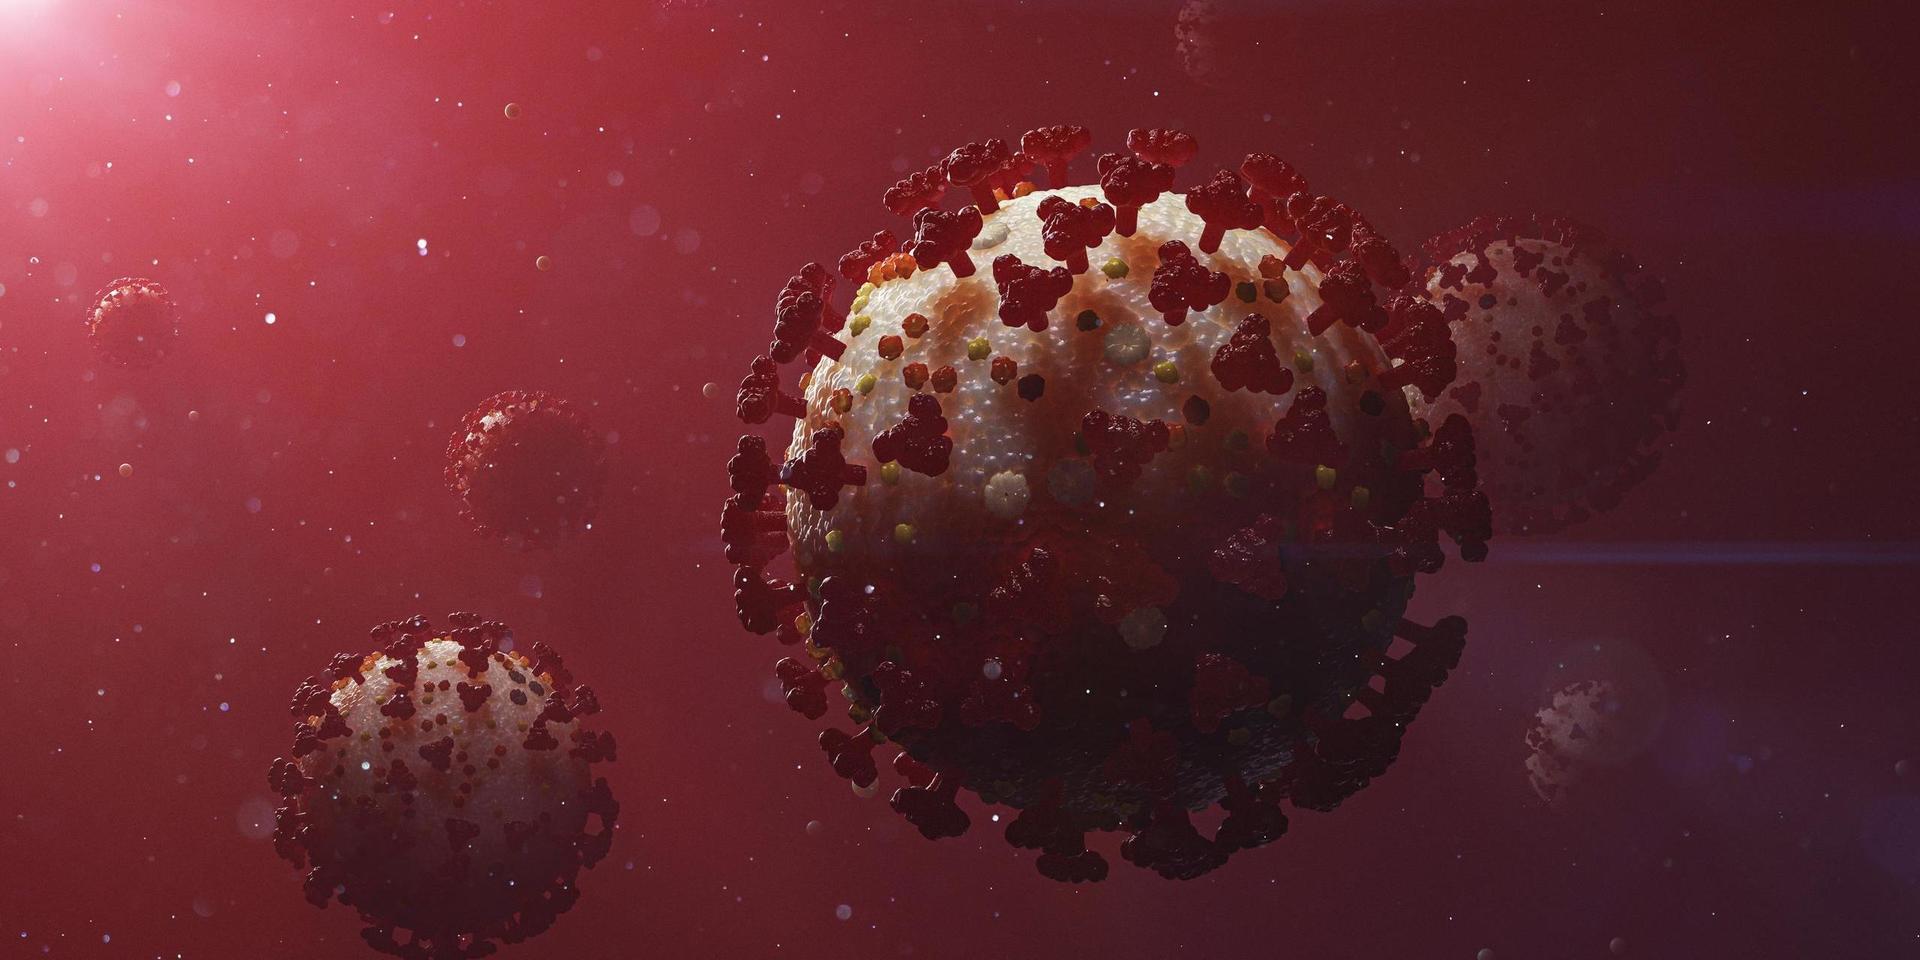 Nästan 300 000 personer har dött av coronaviruset. Men ett förbisett protein kan vara nyckeln till att lindra lunginflammation, som ofta kommer vid svåra fall av covid-19.